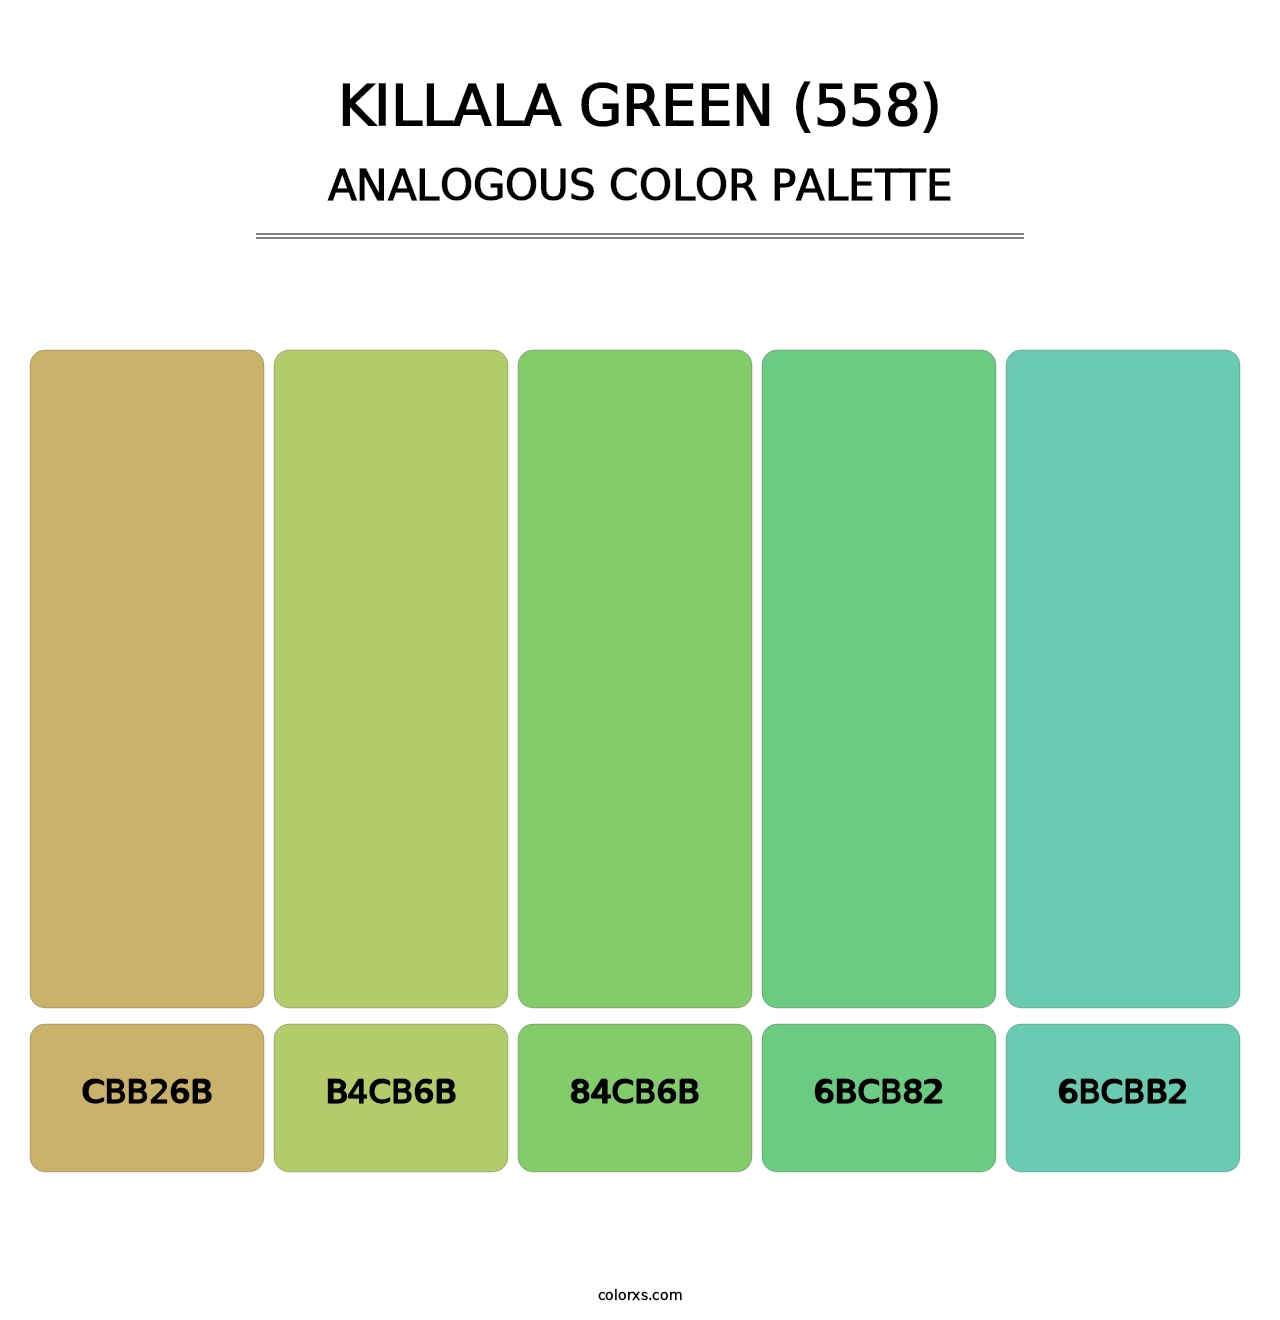 Killala Green (558) - Analogous Color Palette